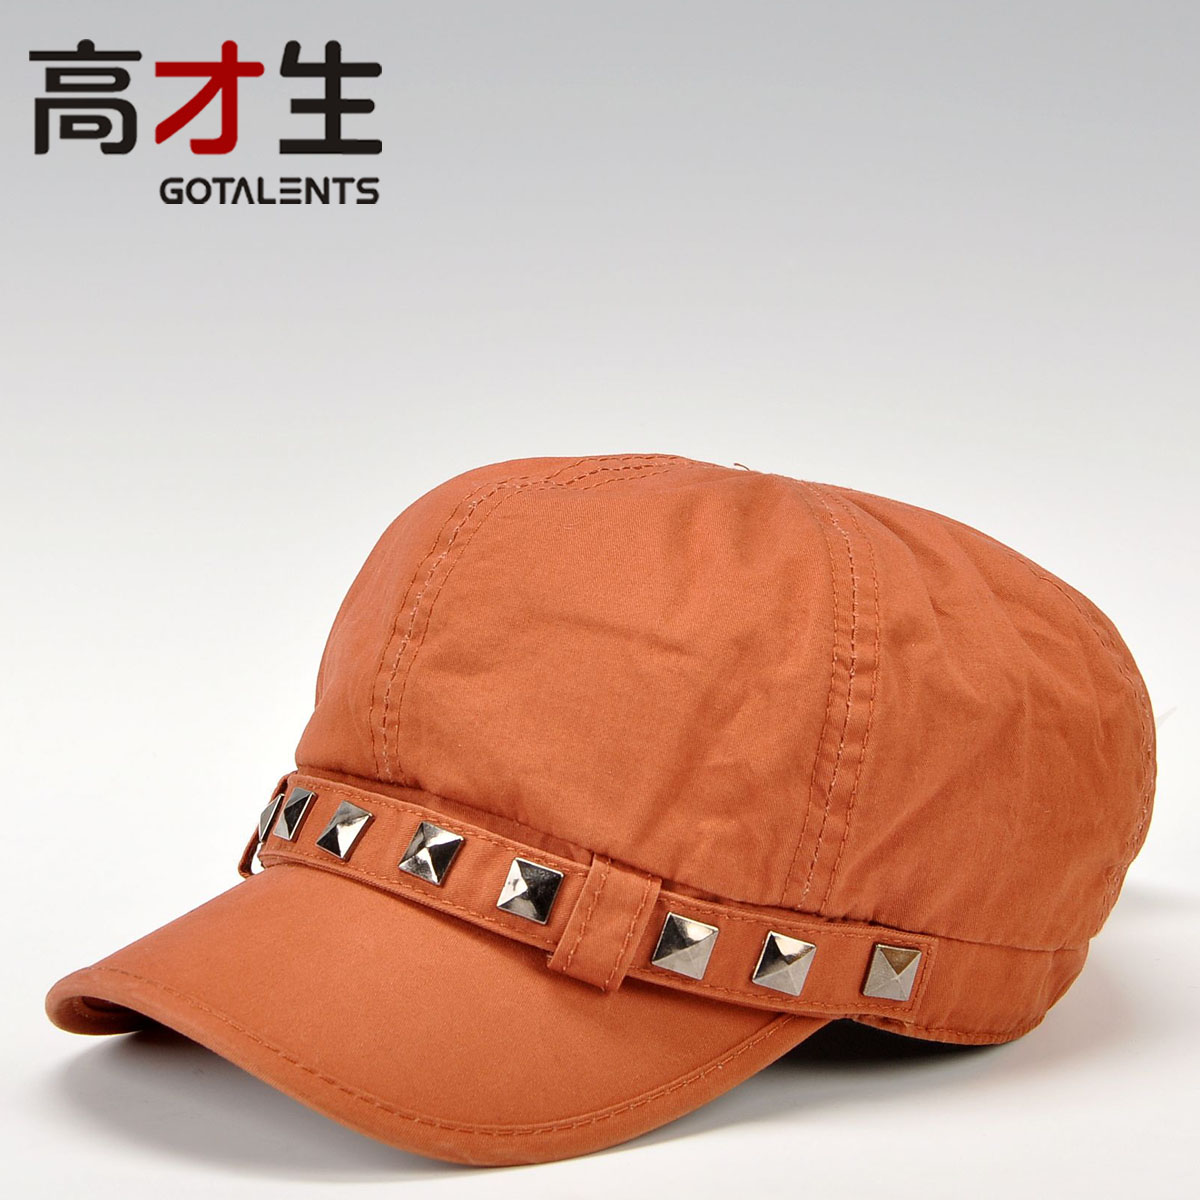 Fashion rivet outdoor short brim newsboy cap octagonal cap solid color casual cap women's hat